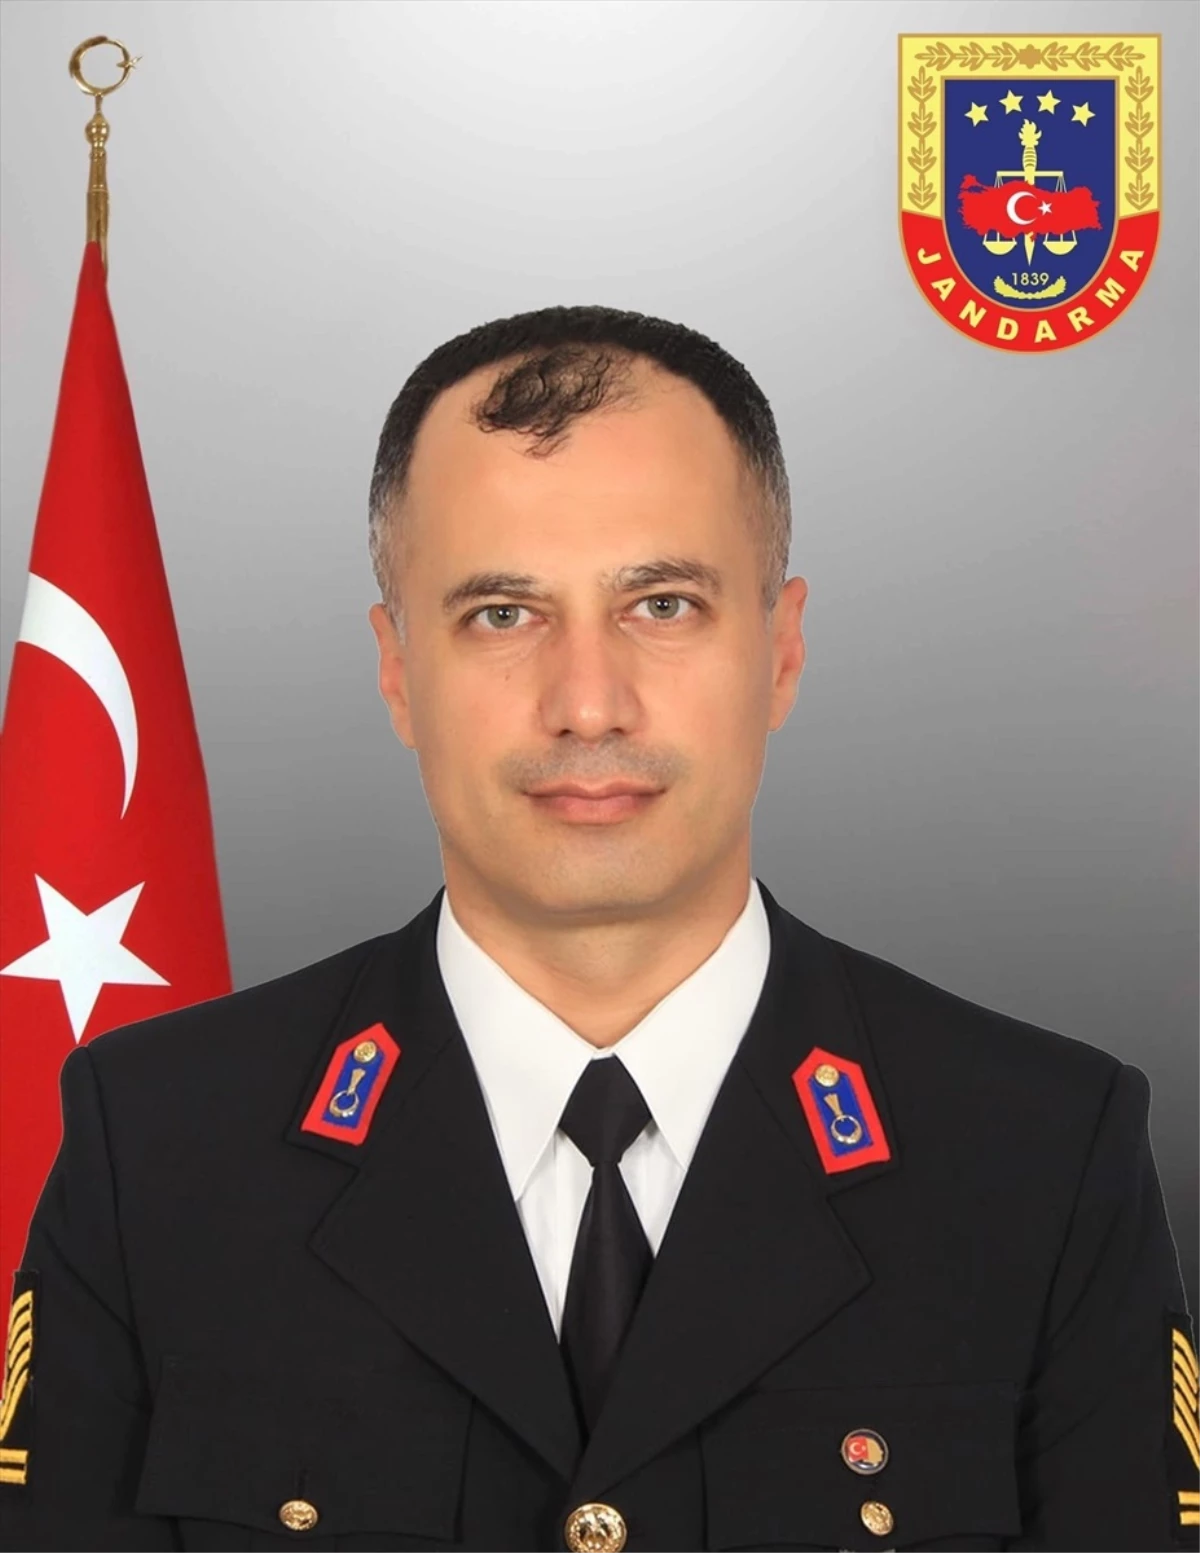 Erzurum İl Jandarma Komutanlığı’nda görevli şehit Jandarma Astsubay Kıdemli Başçavuş Mustafa Yaşar için tören düzenlendi